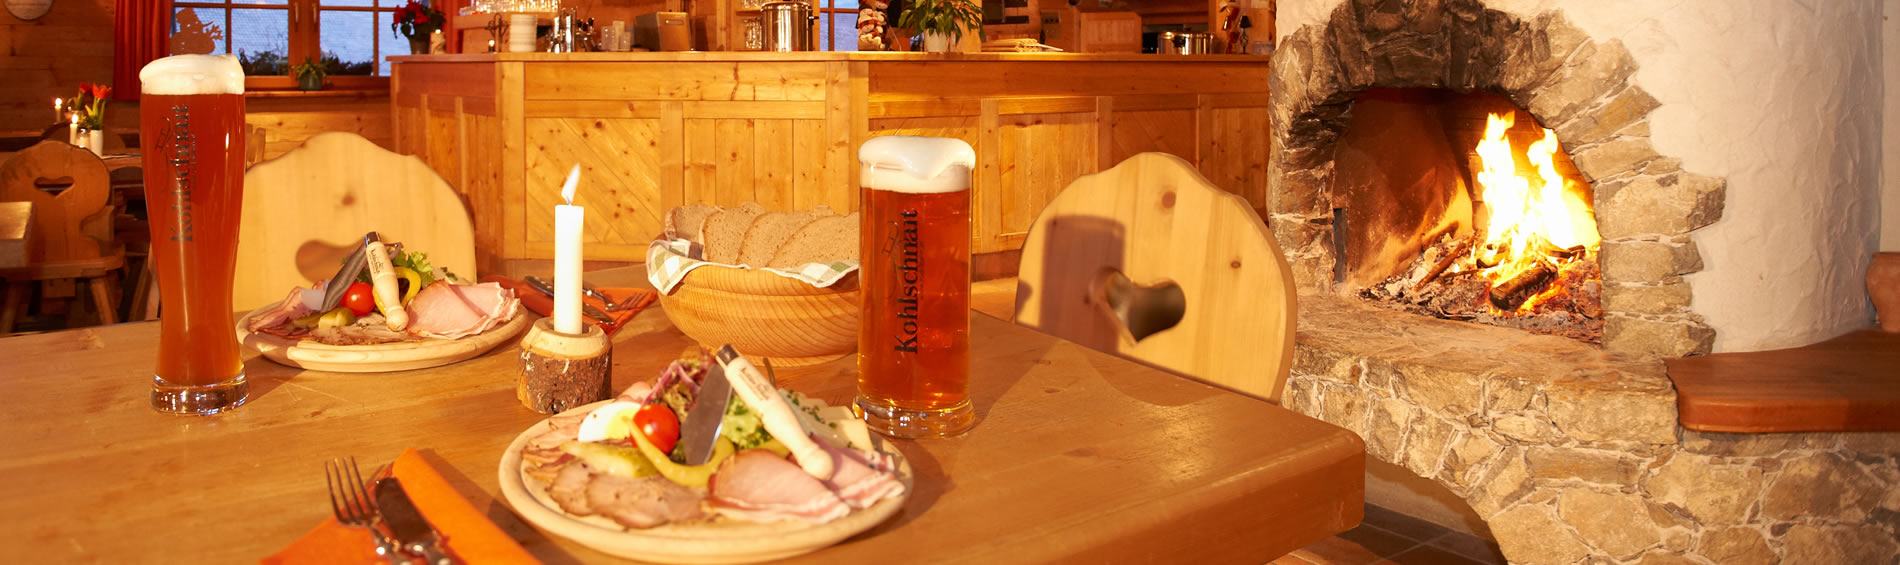 Berggasthof Kohlschnait in Gries im Pinzgau mit Gasthof, eigene Brauerei, Rodelbahn, Parcours für Bogenschießen und Ferienhaus für Hüttenurlaub